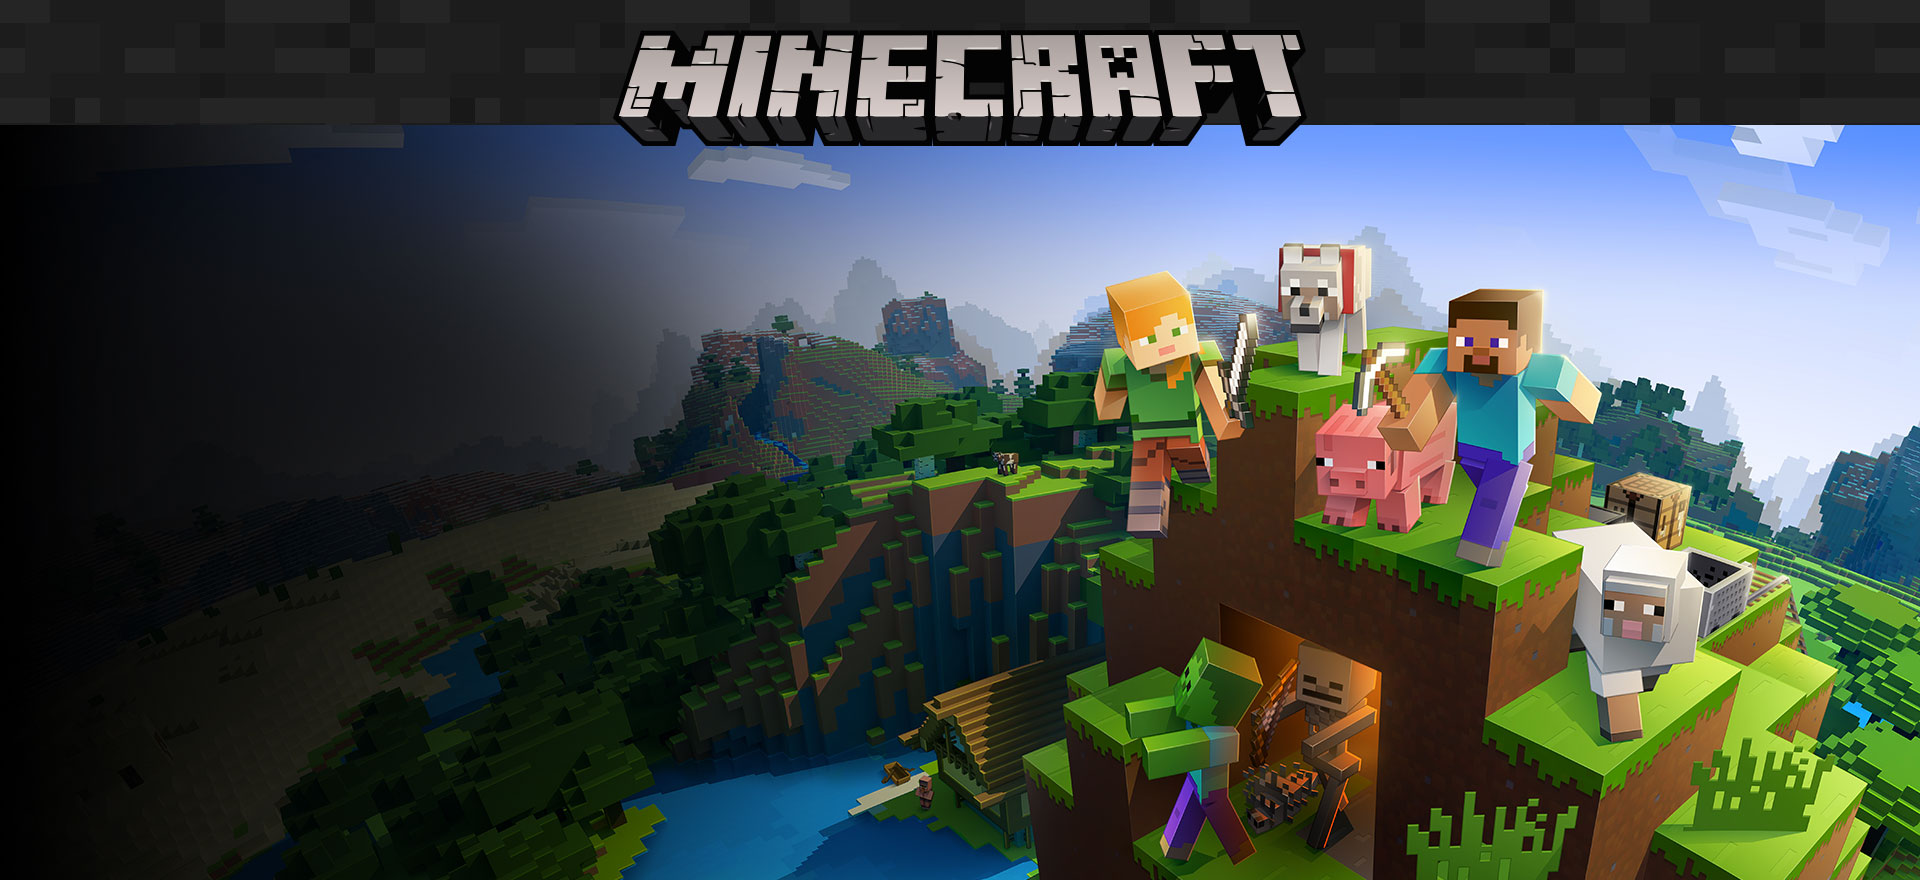 Продажи Minecraft более 200 миллионов, 126 миллионов человек играют ежемесячно 2